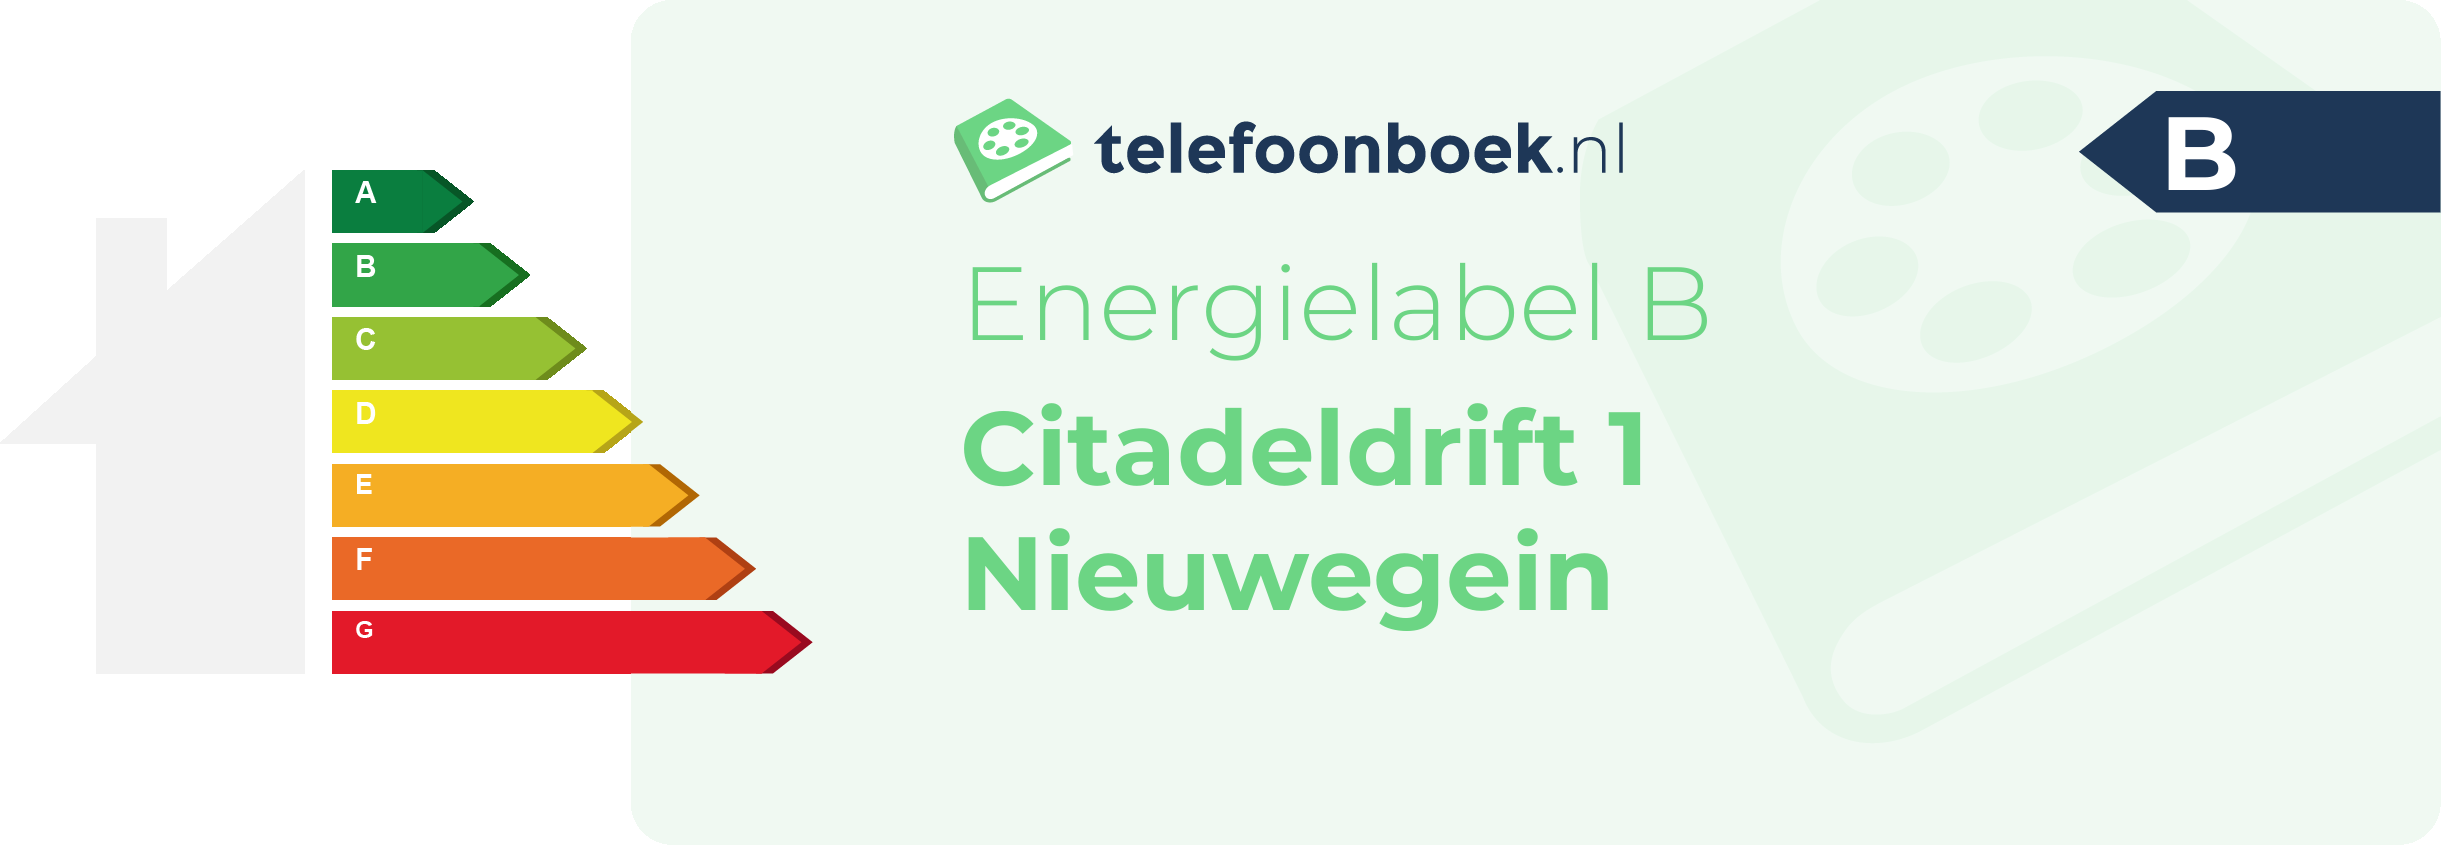 Energielabel Citadeldrift 1 Nieuwegein